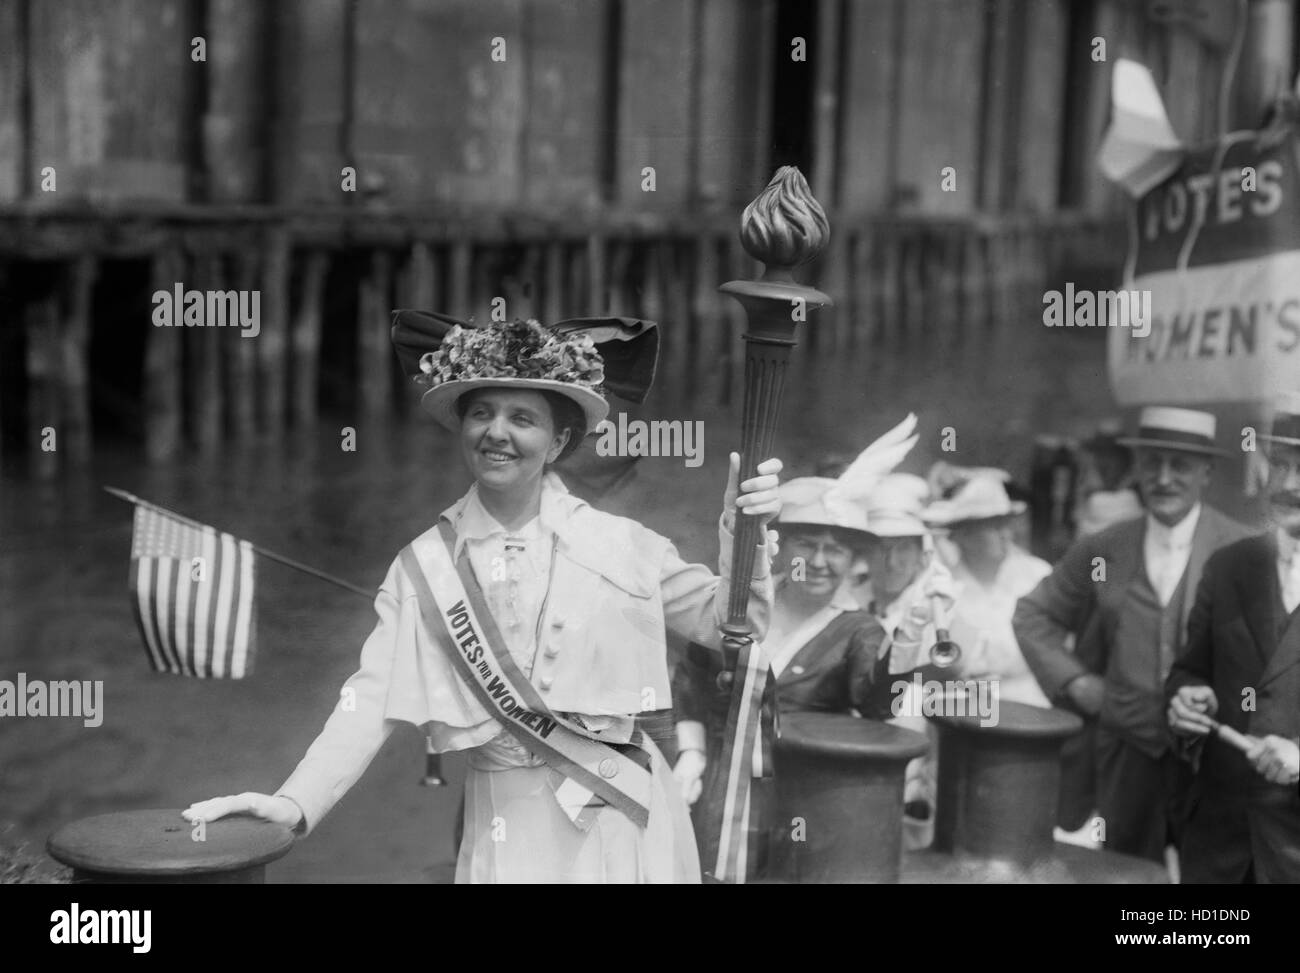 Mina van Winkle mit Wahlrecht Fackel auf Schlepper während der "Übergabe der Fackel des Sieges" Demonstration, Jersey City, New Jersey, USA, Bain News Service, August 1915 Stockfoto